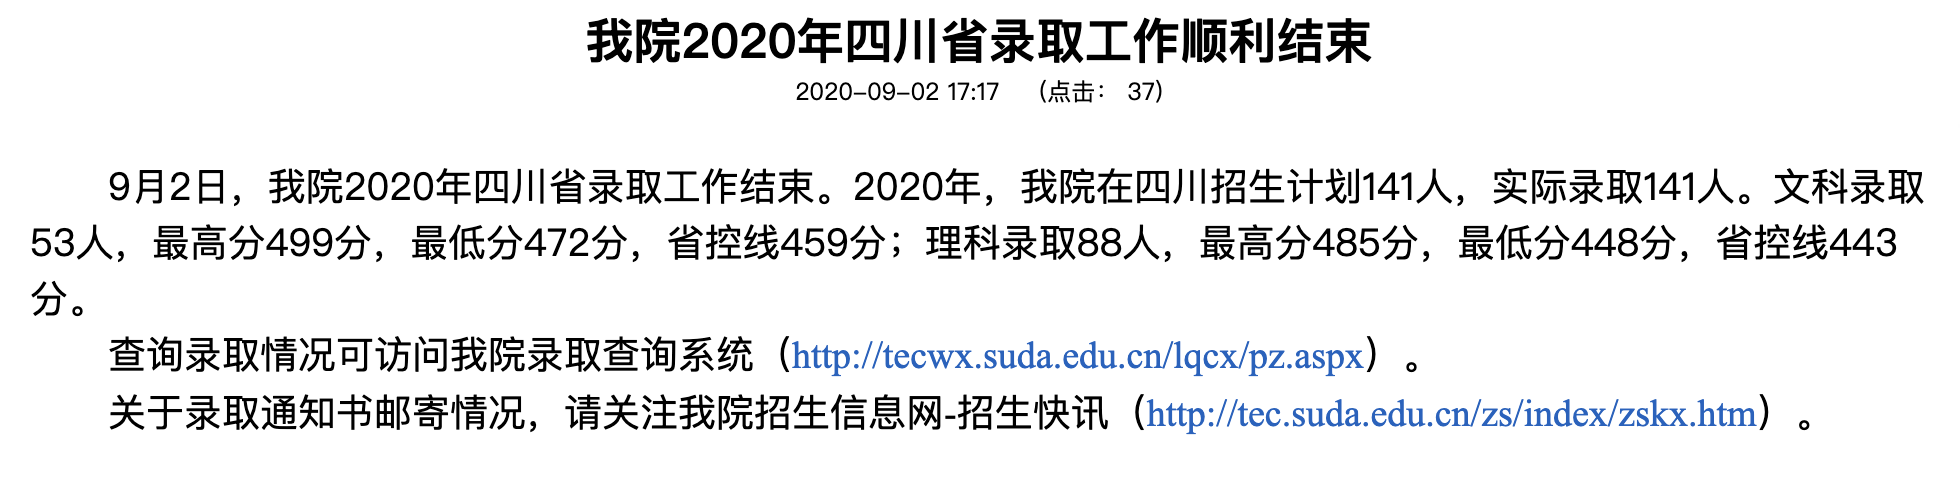 苏州大学应用技术学院2020年四川省录取查询网址